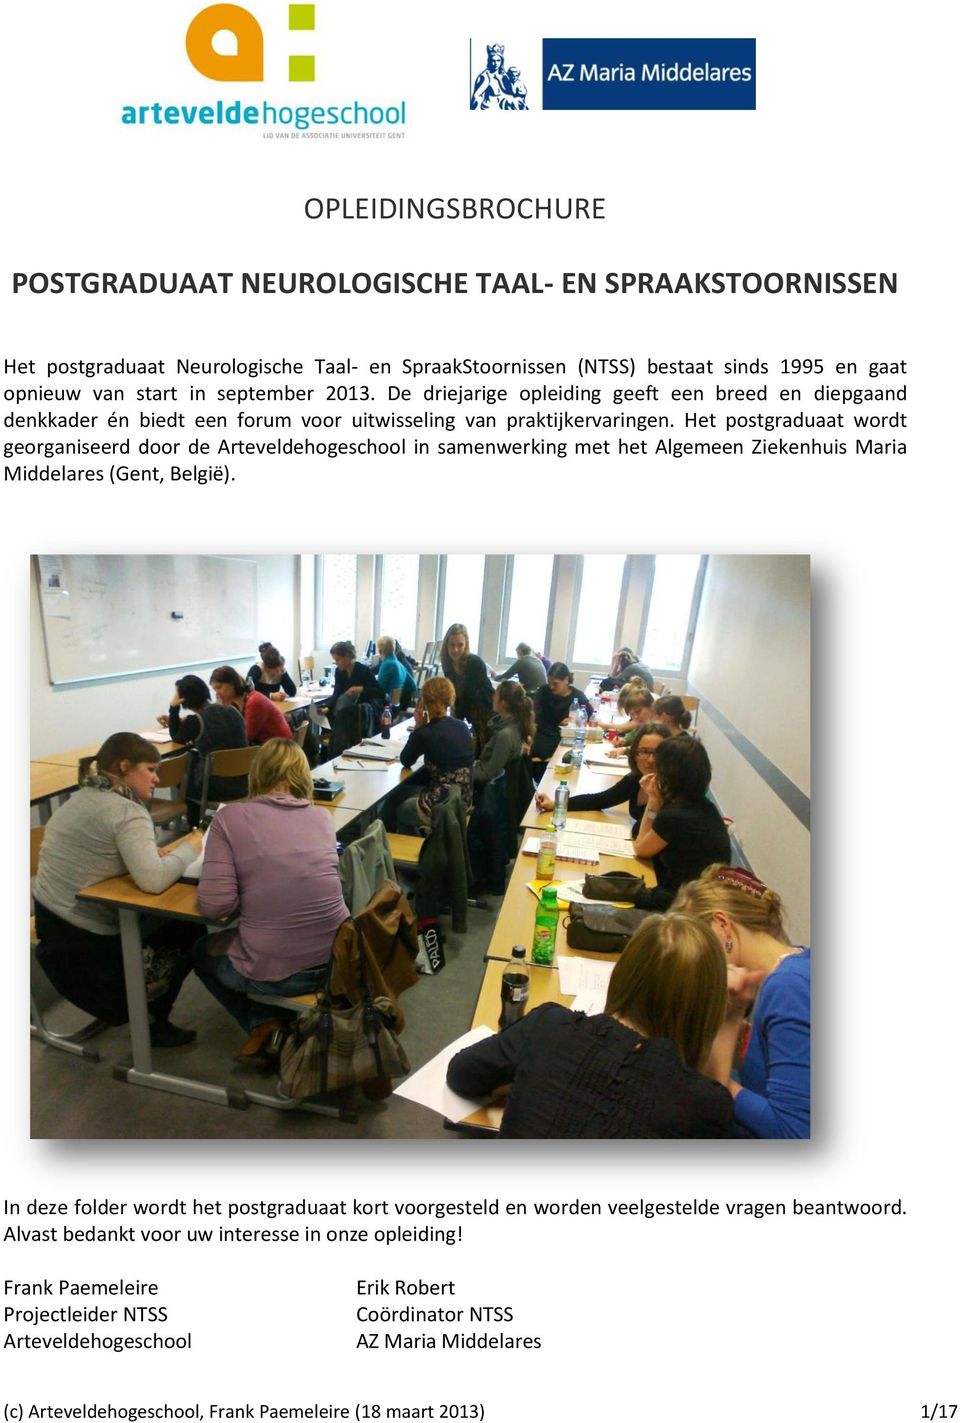 Het postgraduaat wordt georganiseerd door de Arteveldehogeschool in samenwerking met het Algemeen Ziekenhuis Maria Middelares (Gent, België).